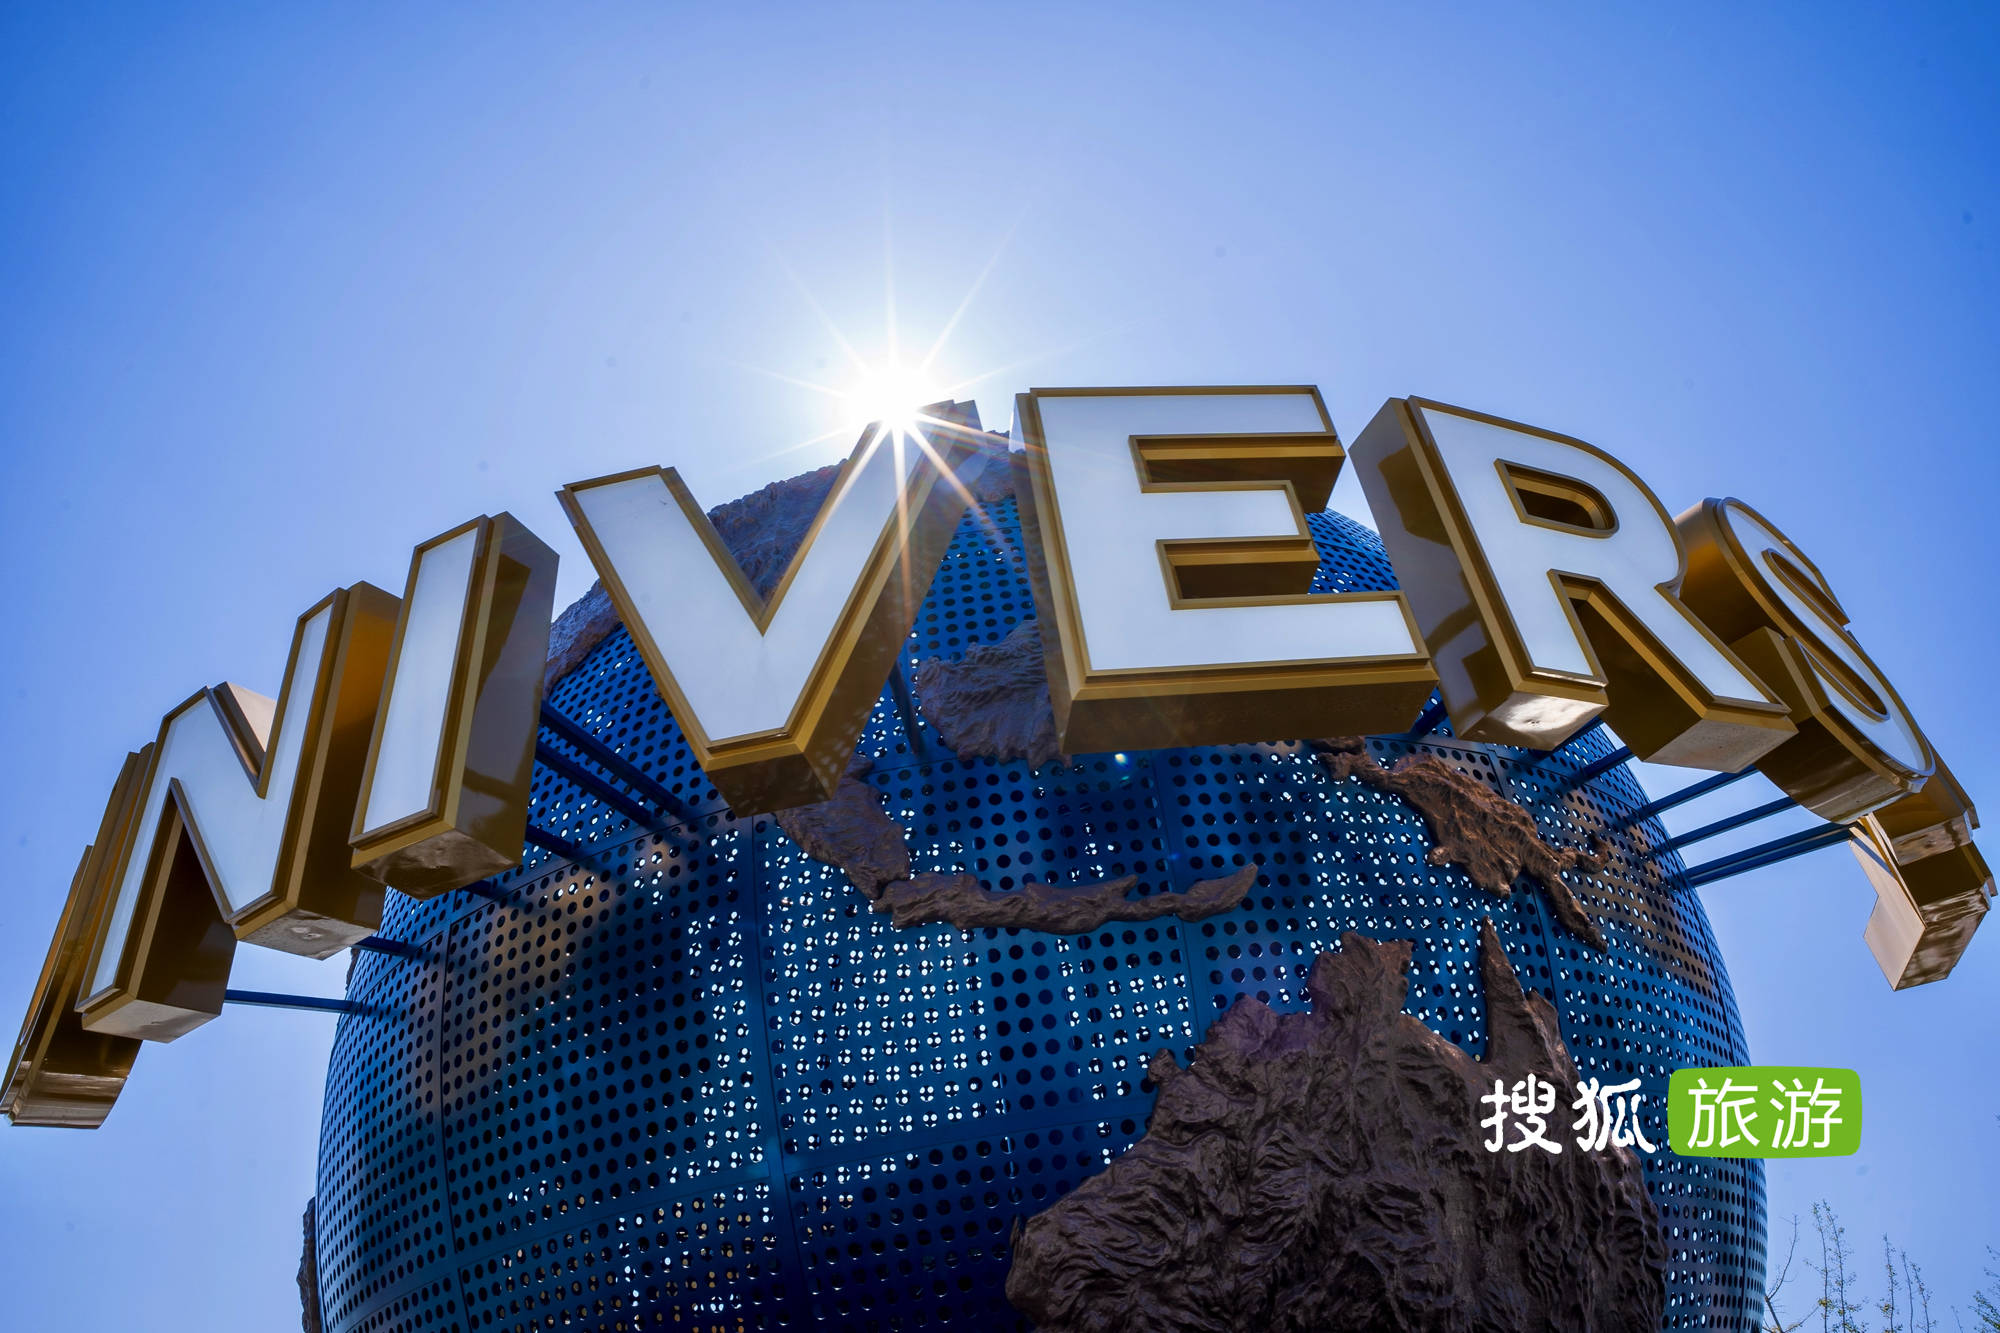 北京环球影城门票及酒店客房9月14日起正式开放预订